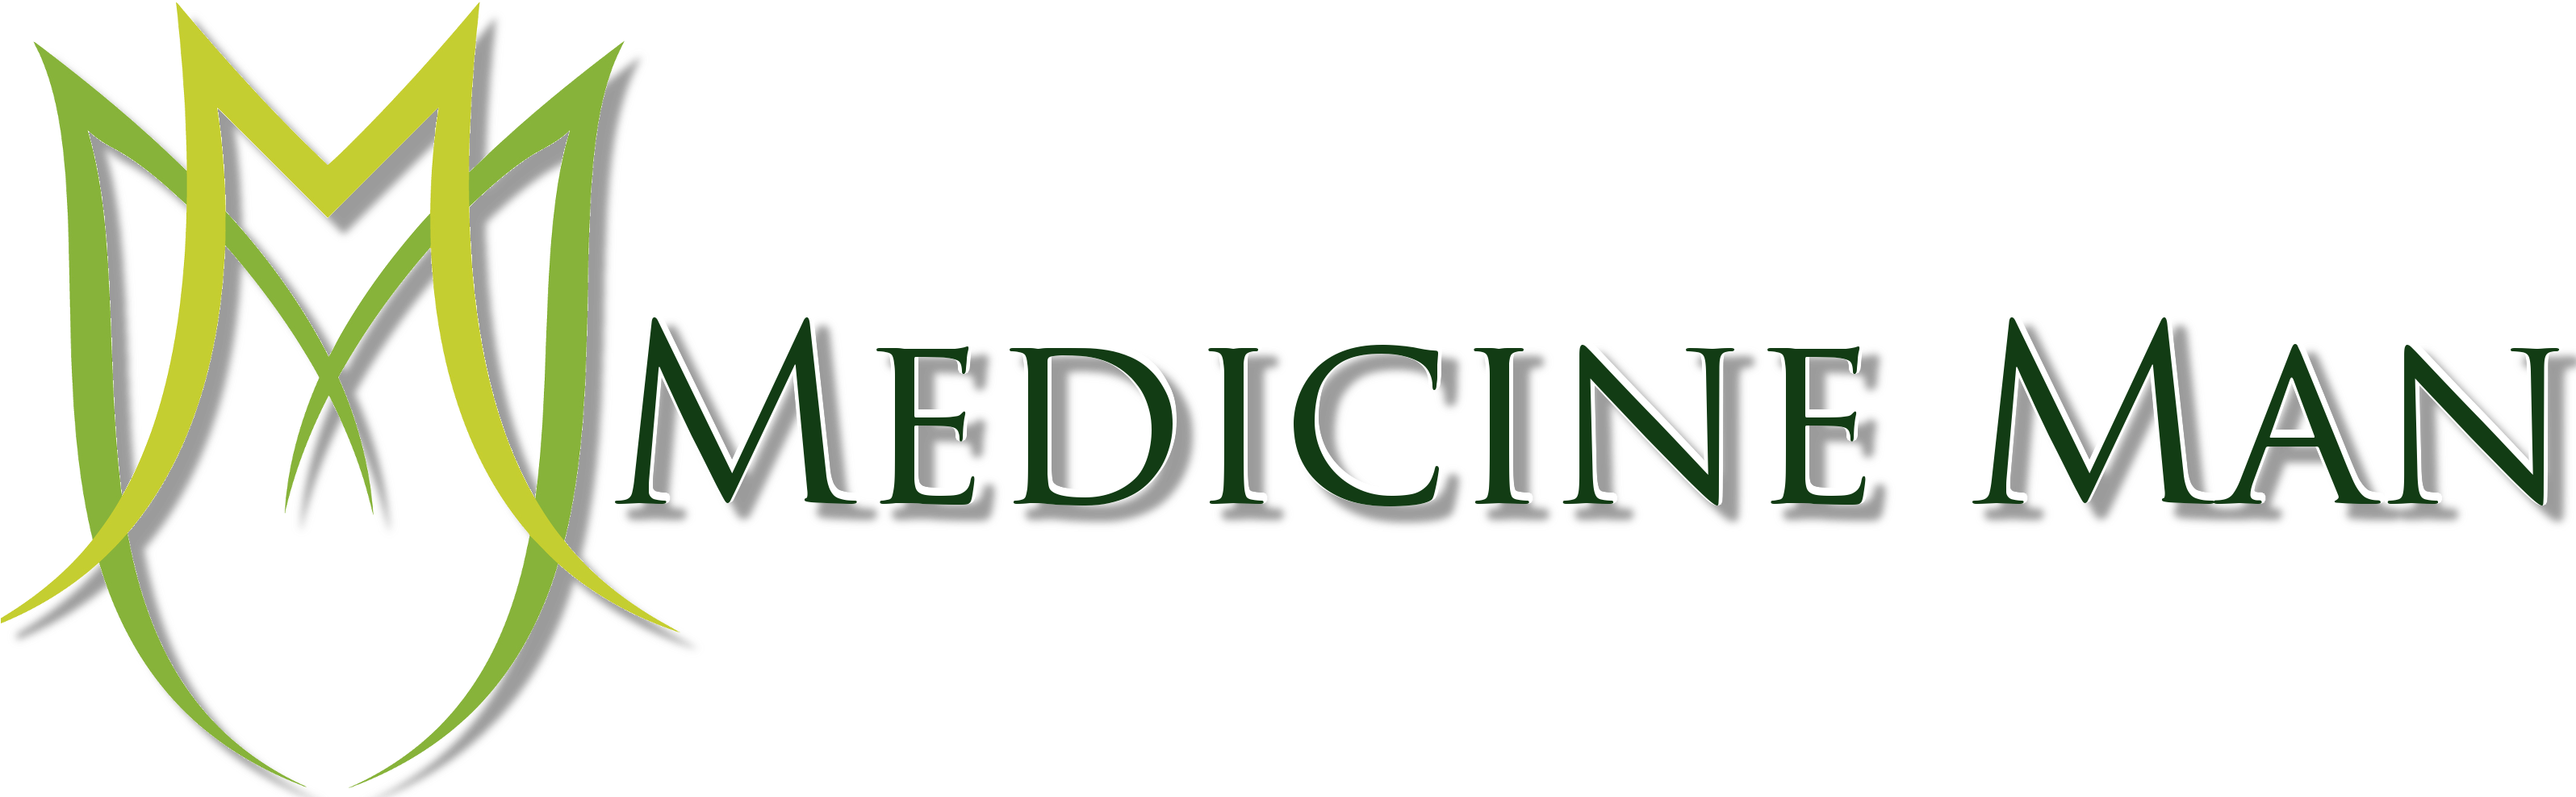 Colorado “medicine Man” Cannabis Crew Headed For Trutv - Medicine Man (3191x996)